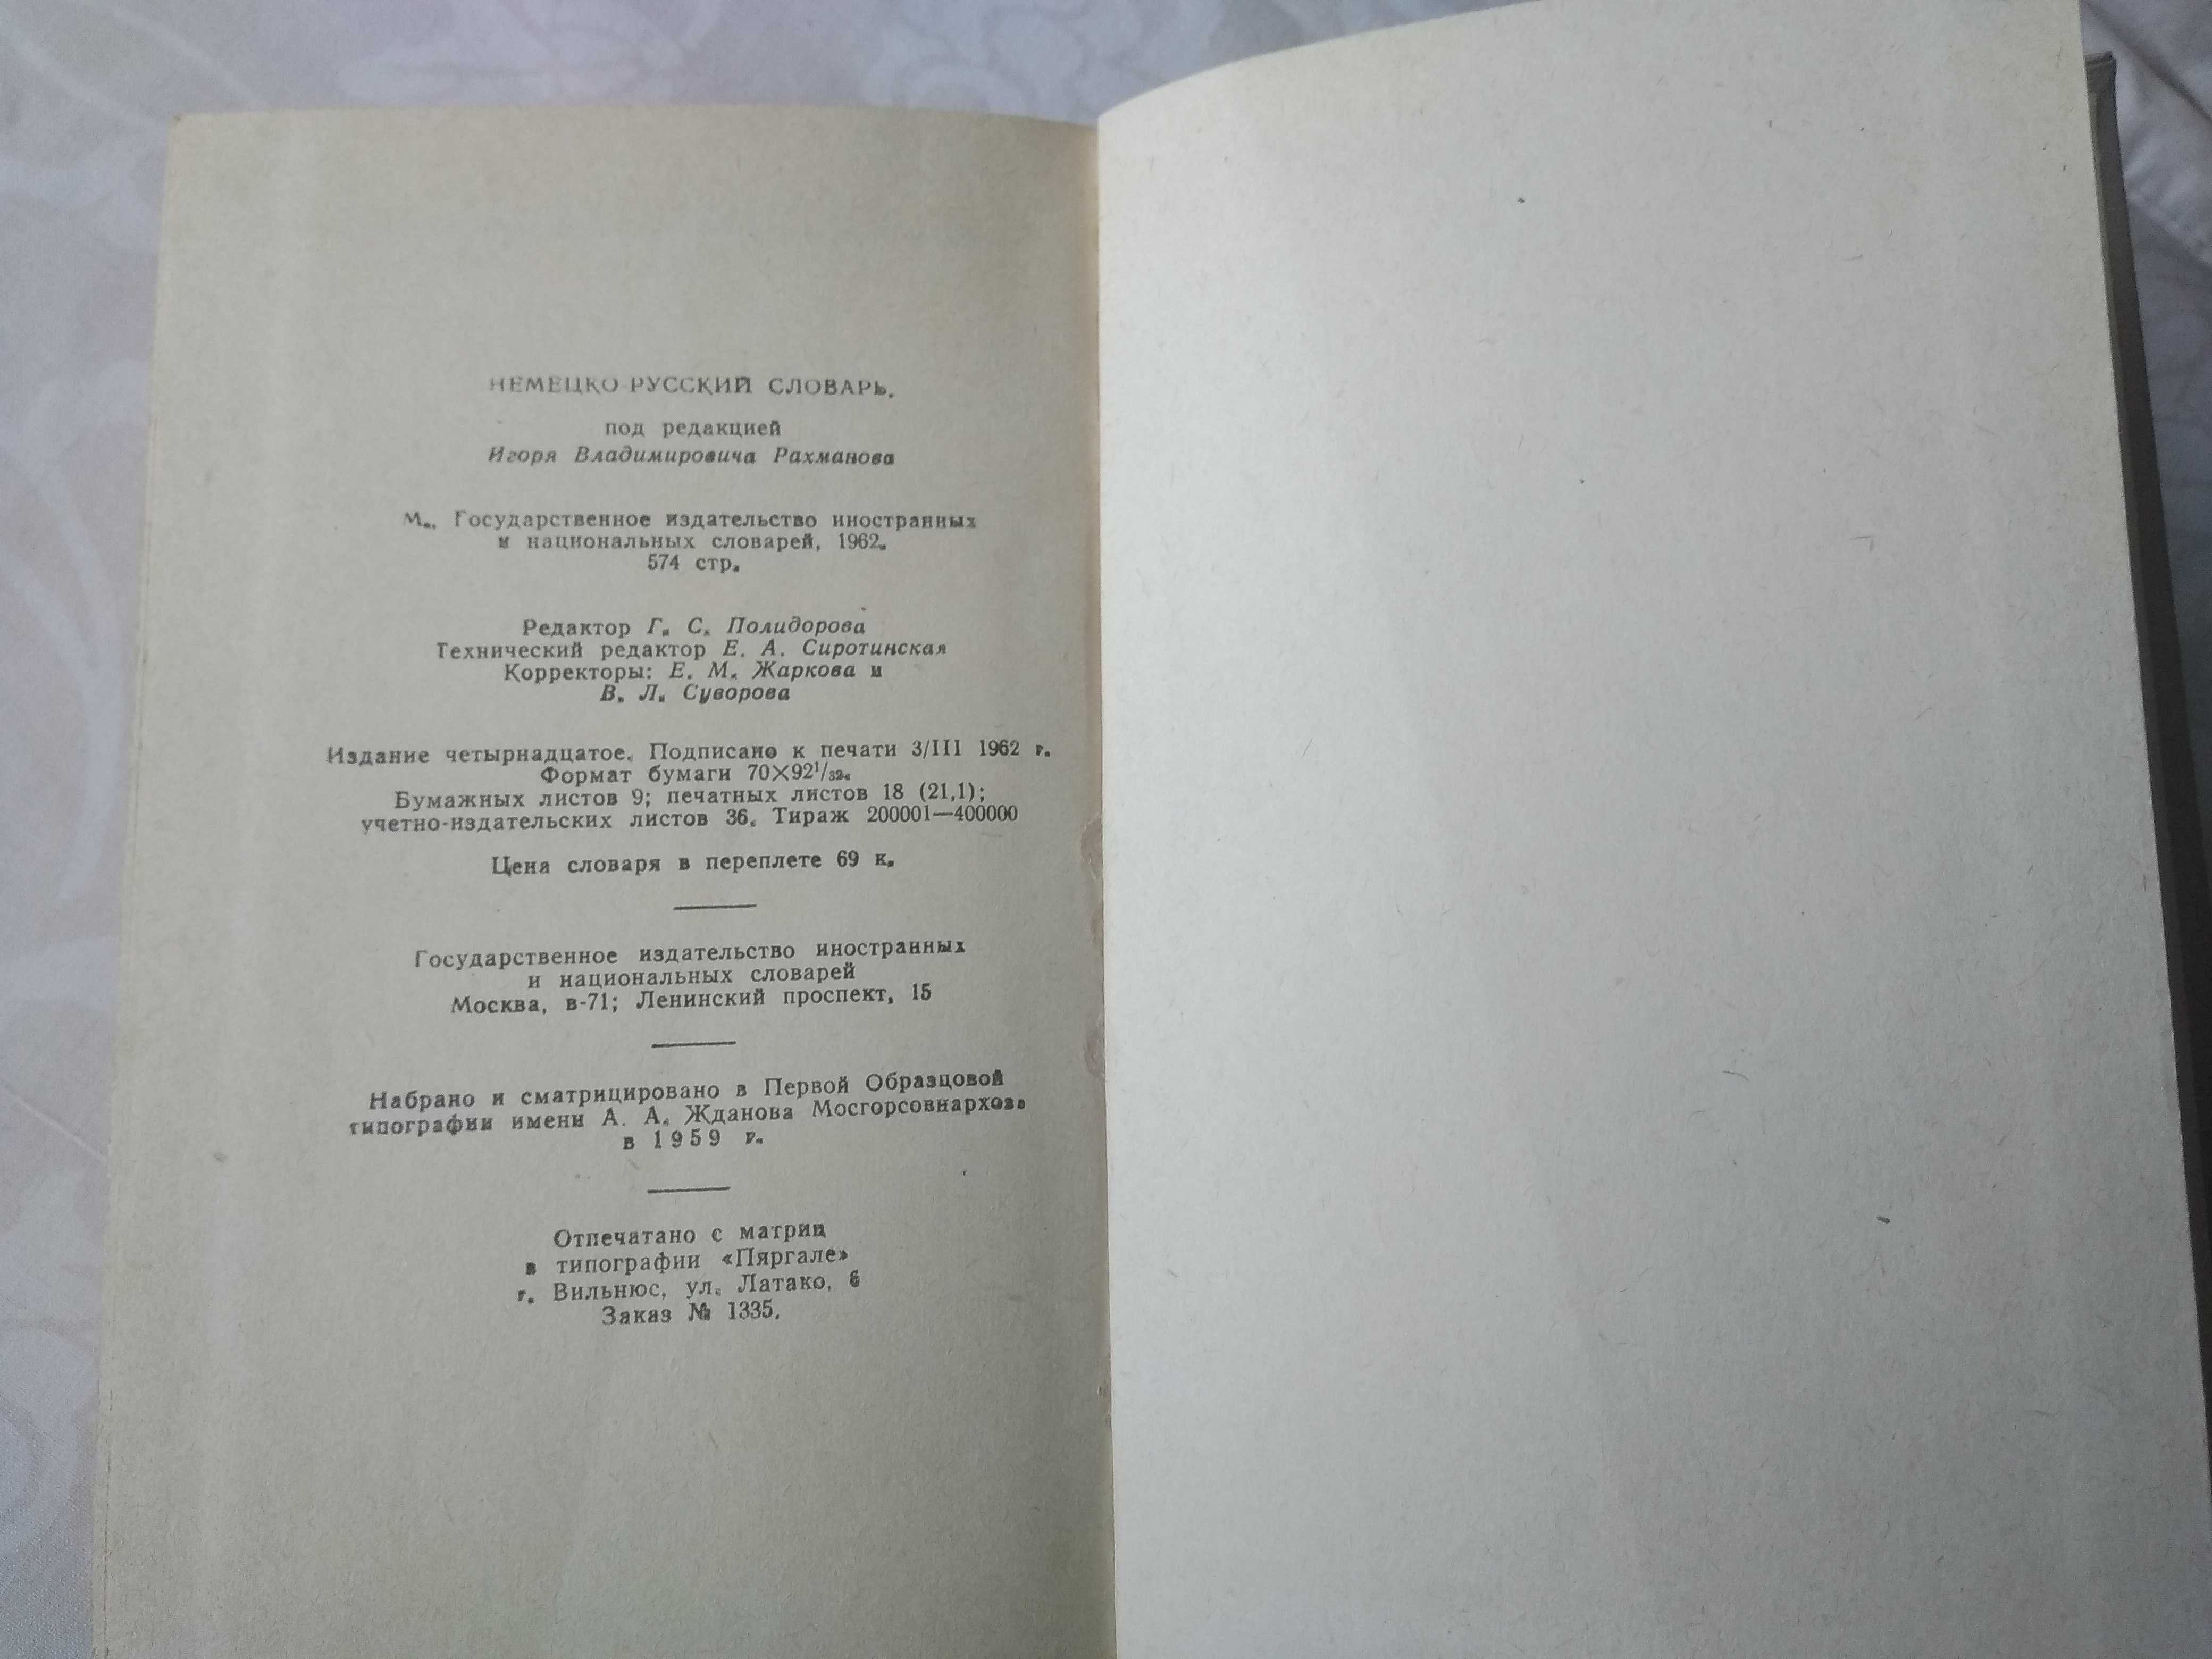 Немецко-русский словарь ред.И.В.Рахманова 1962року.